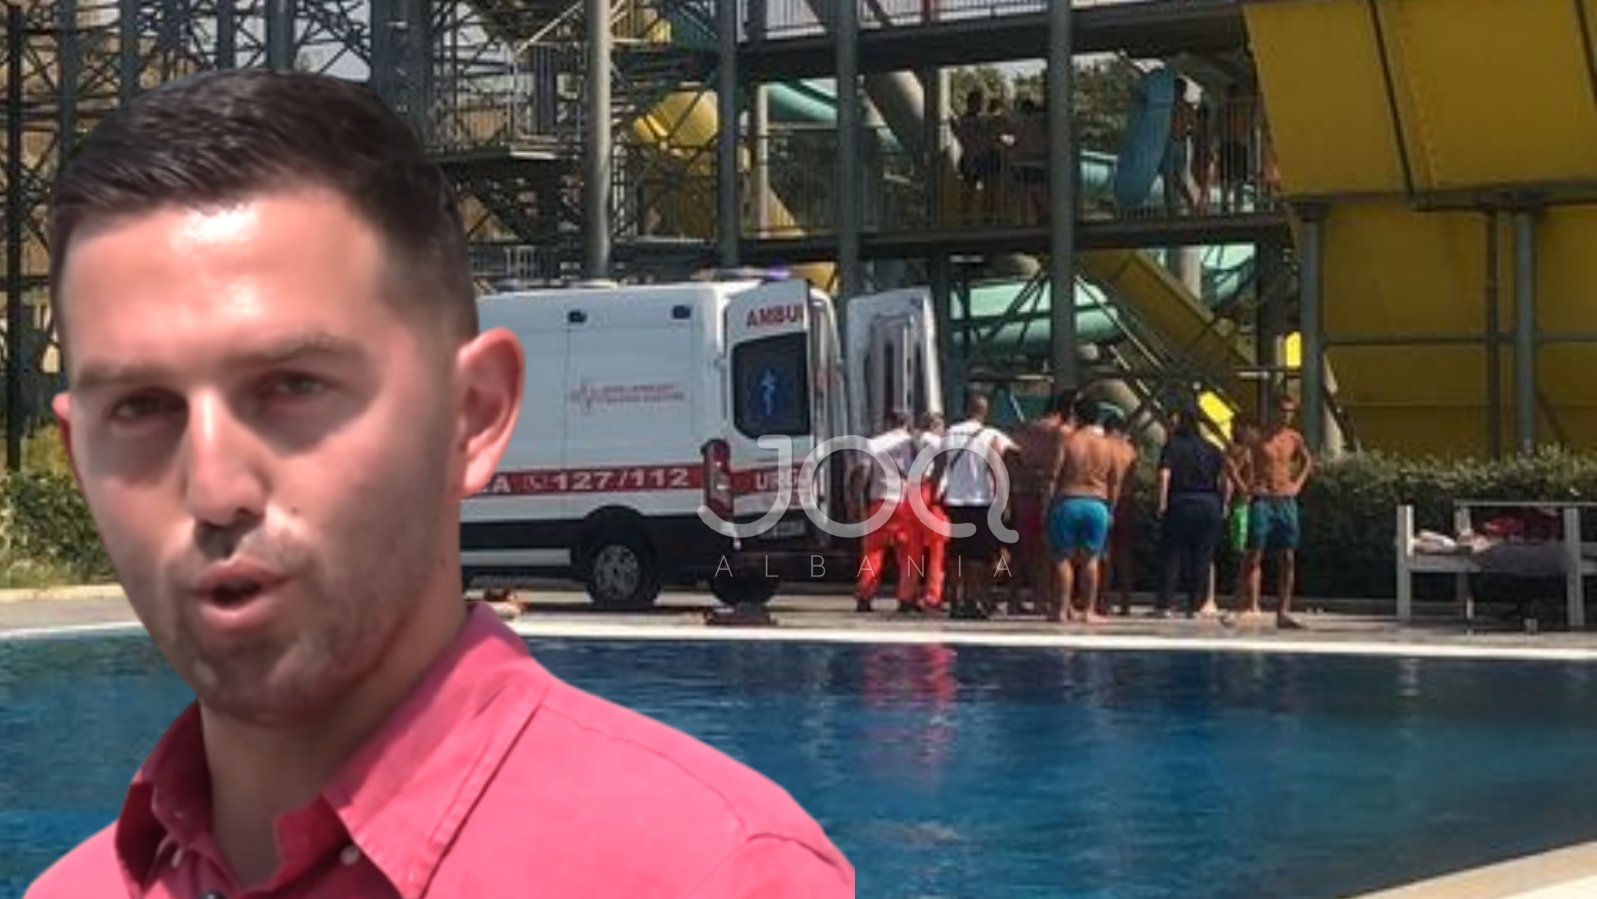 SKANDALI/ ‘Equos Resort’ i Arbër Teqjas po rrezikon jetën e qytetarëve, i riu bie nga rrëshkitësja, mbërrin ambulanca